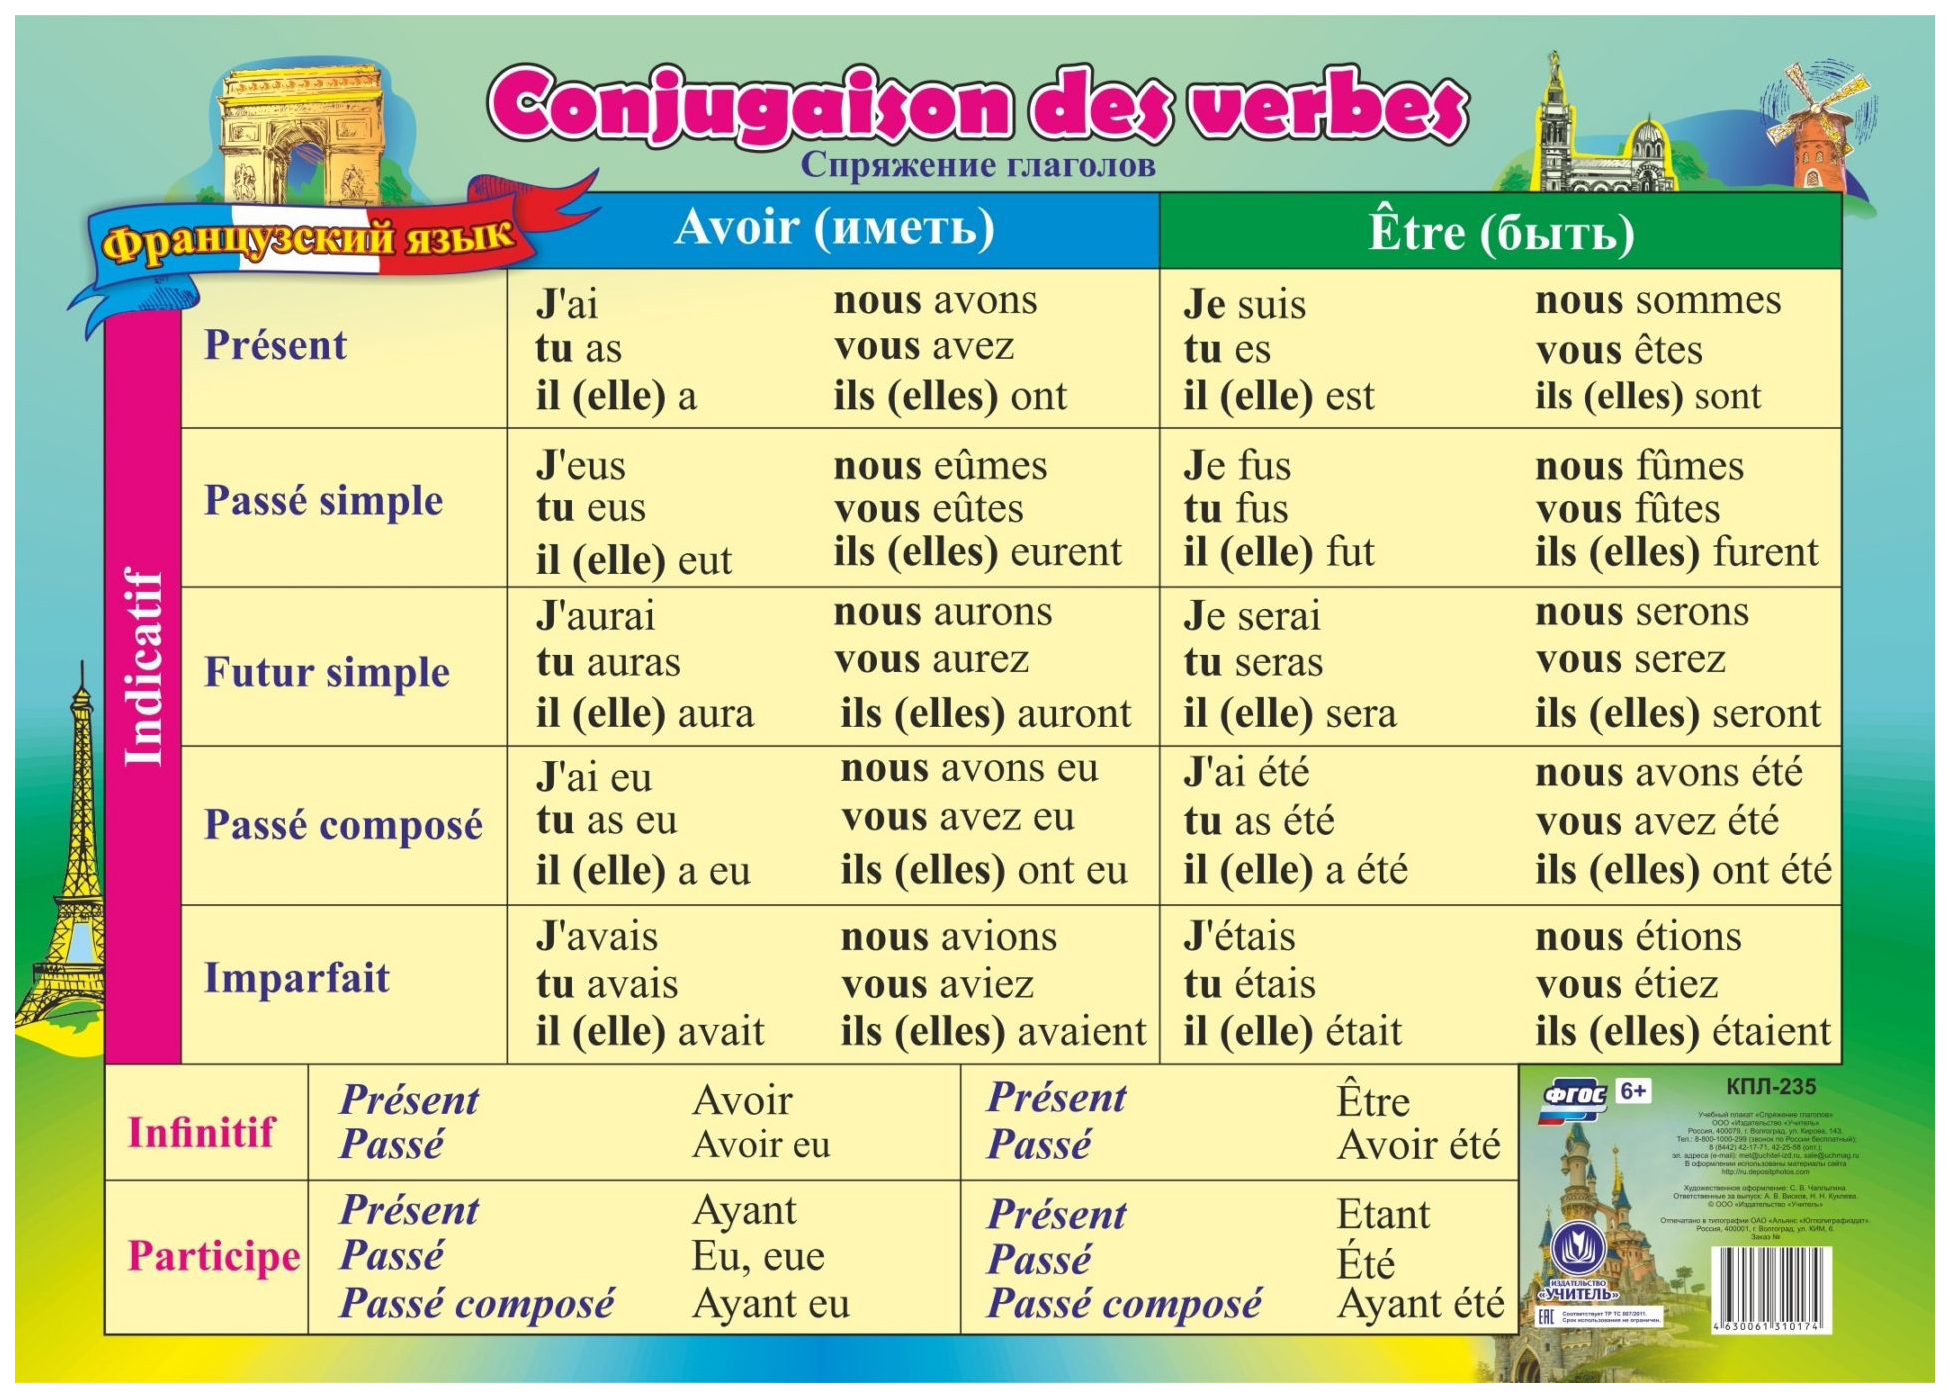 Французские глаголы в прошедшем времени. Французские глаголы. Глаголы французского языка. Неправильные глаголы французского языка. Спряжение французских глаголов.